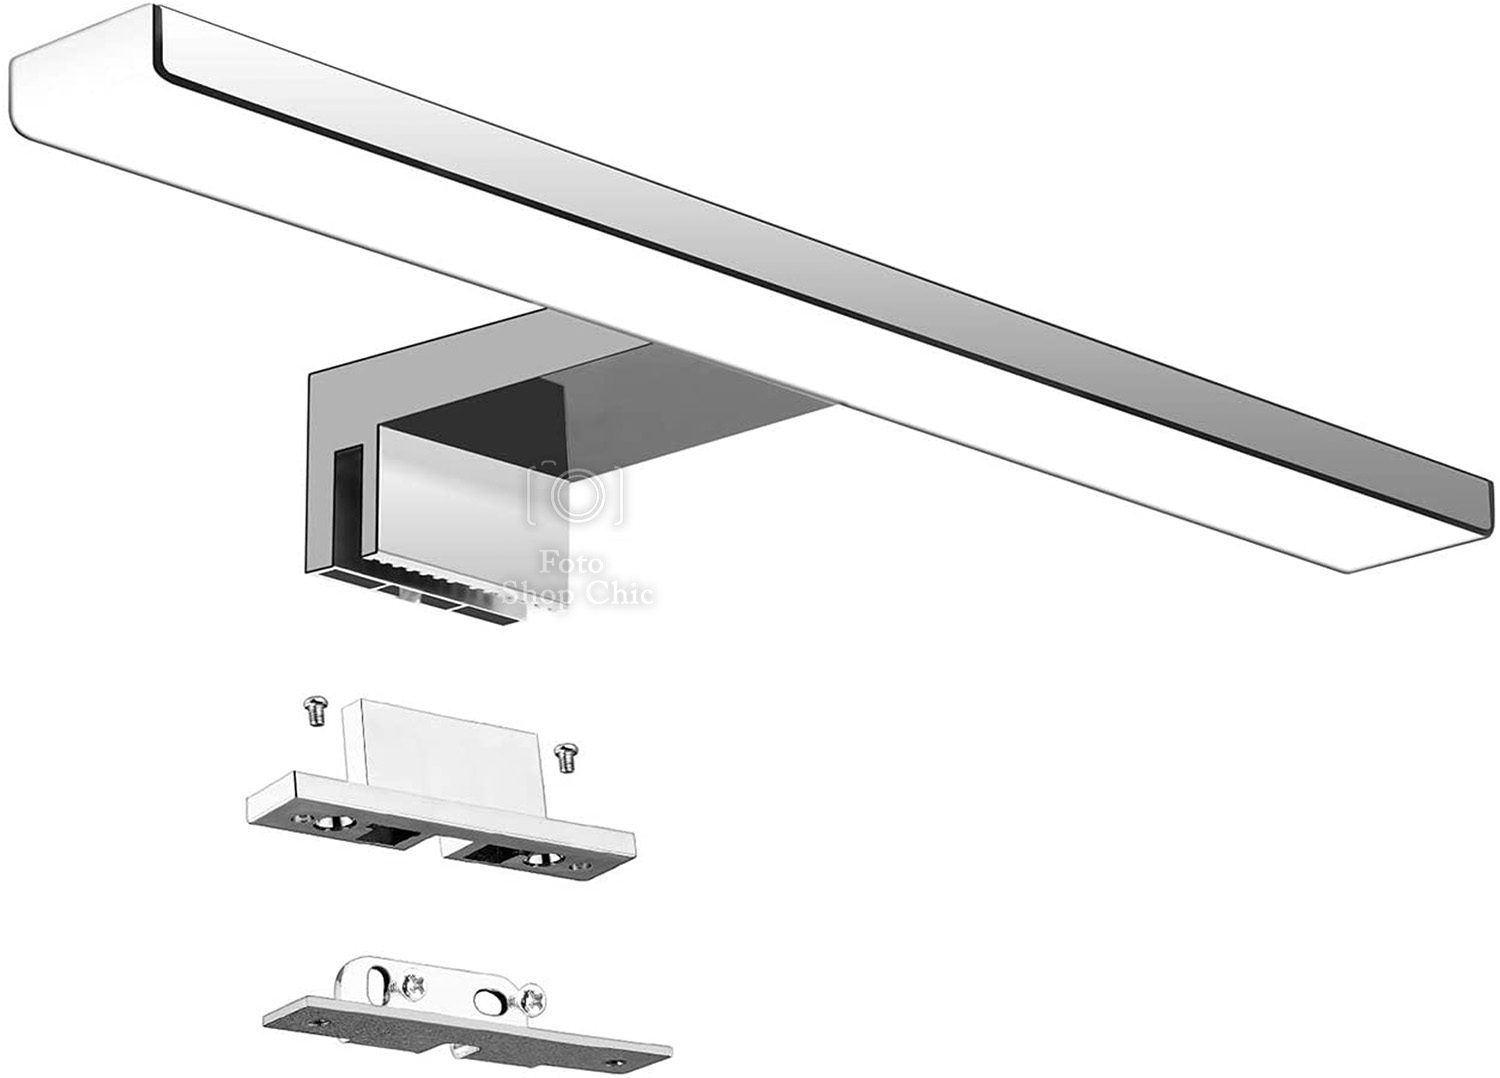 Lampada da Specchio 5W, adatta a specchi, bagno, armadi, antiumidità LED  alta efficienza A+ - Le Chic Arredamenti